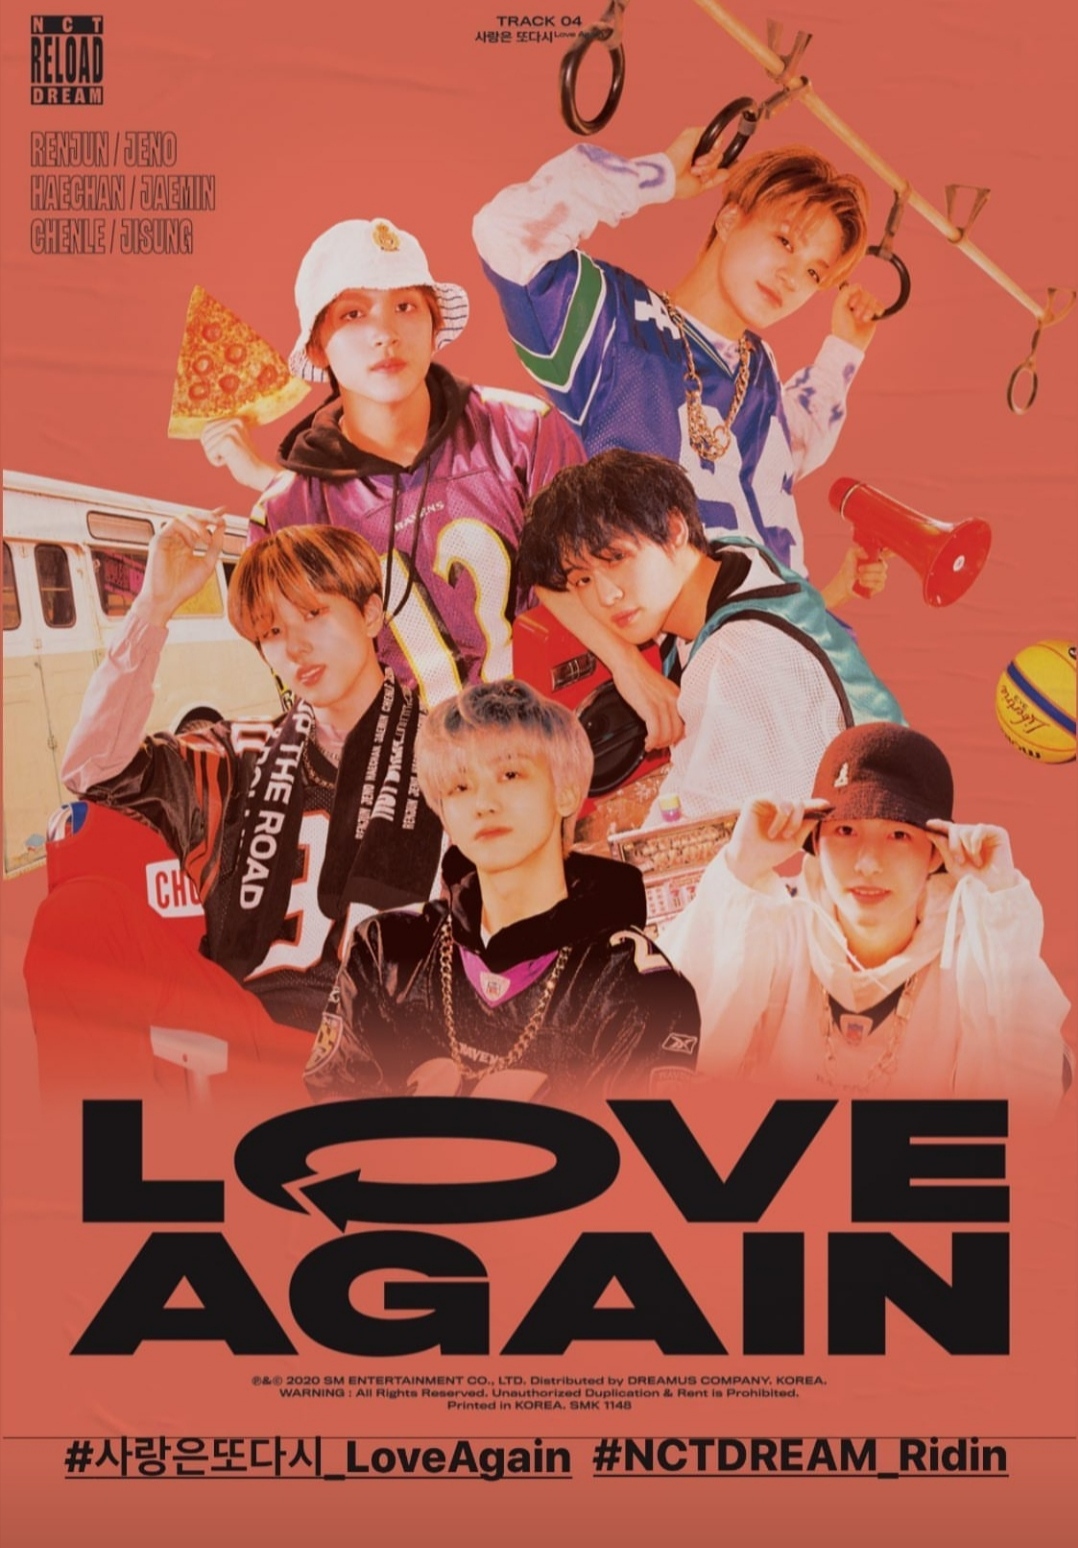 Video track terbaru NCT Dream berjudul Love Again telah rilis